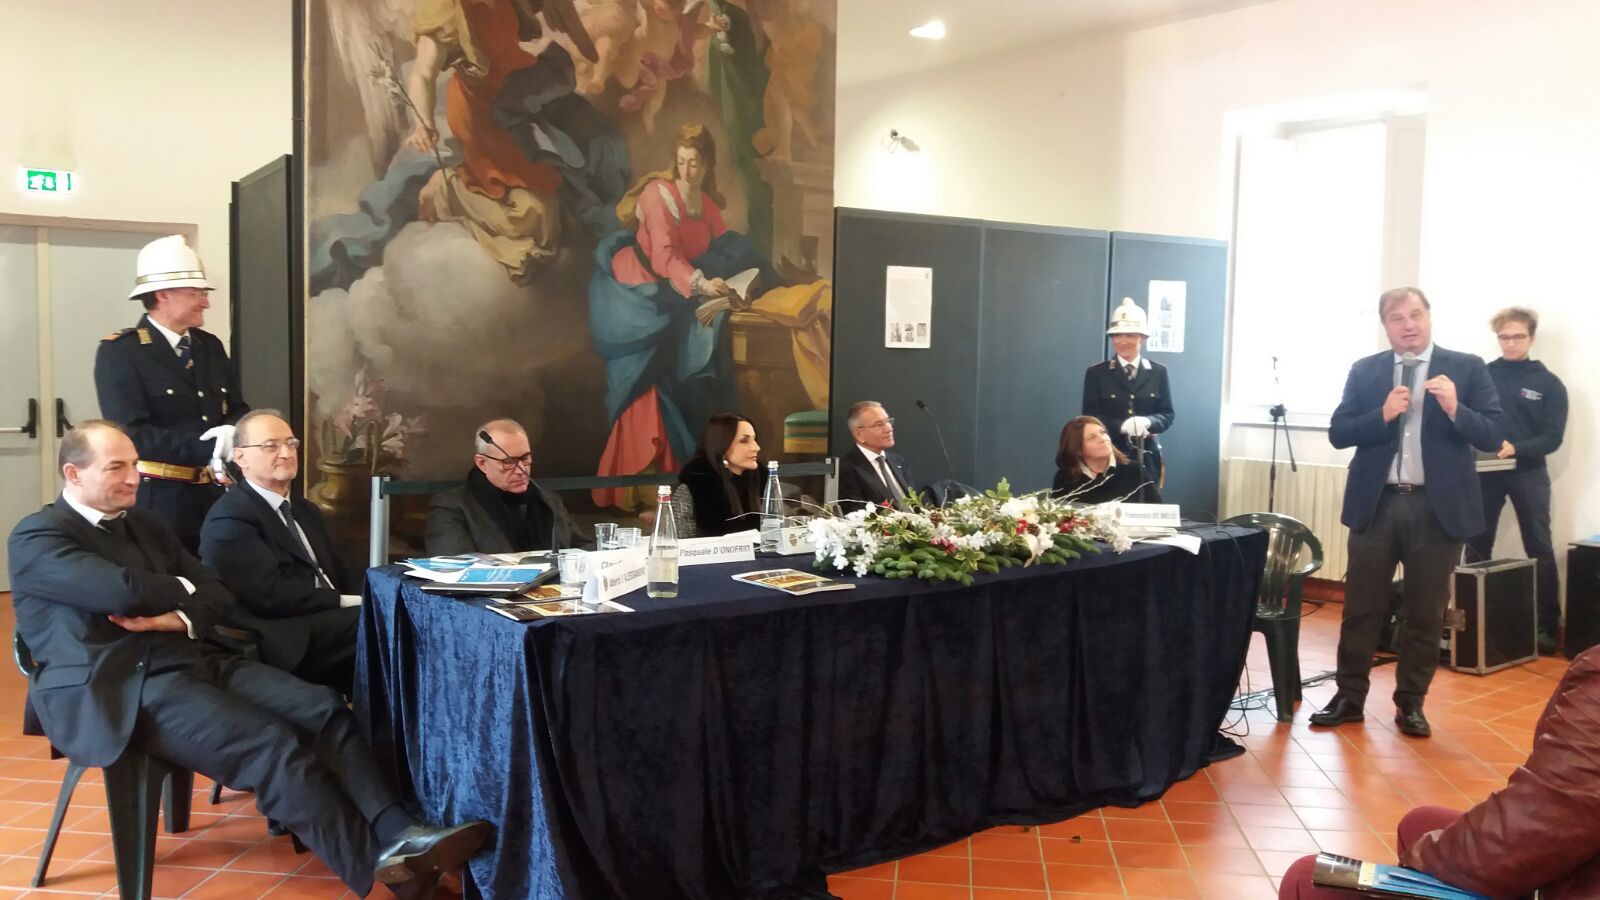 Nasce la Carta di Nola, obiettivo tutelare il patrimonio immateriale italiano dell’UNESCO